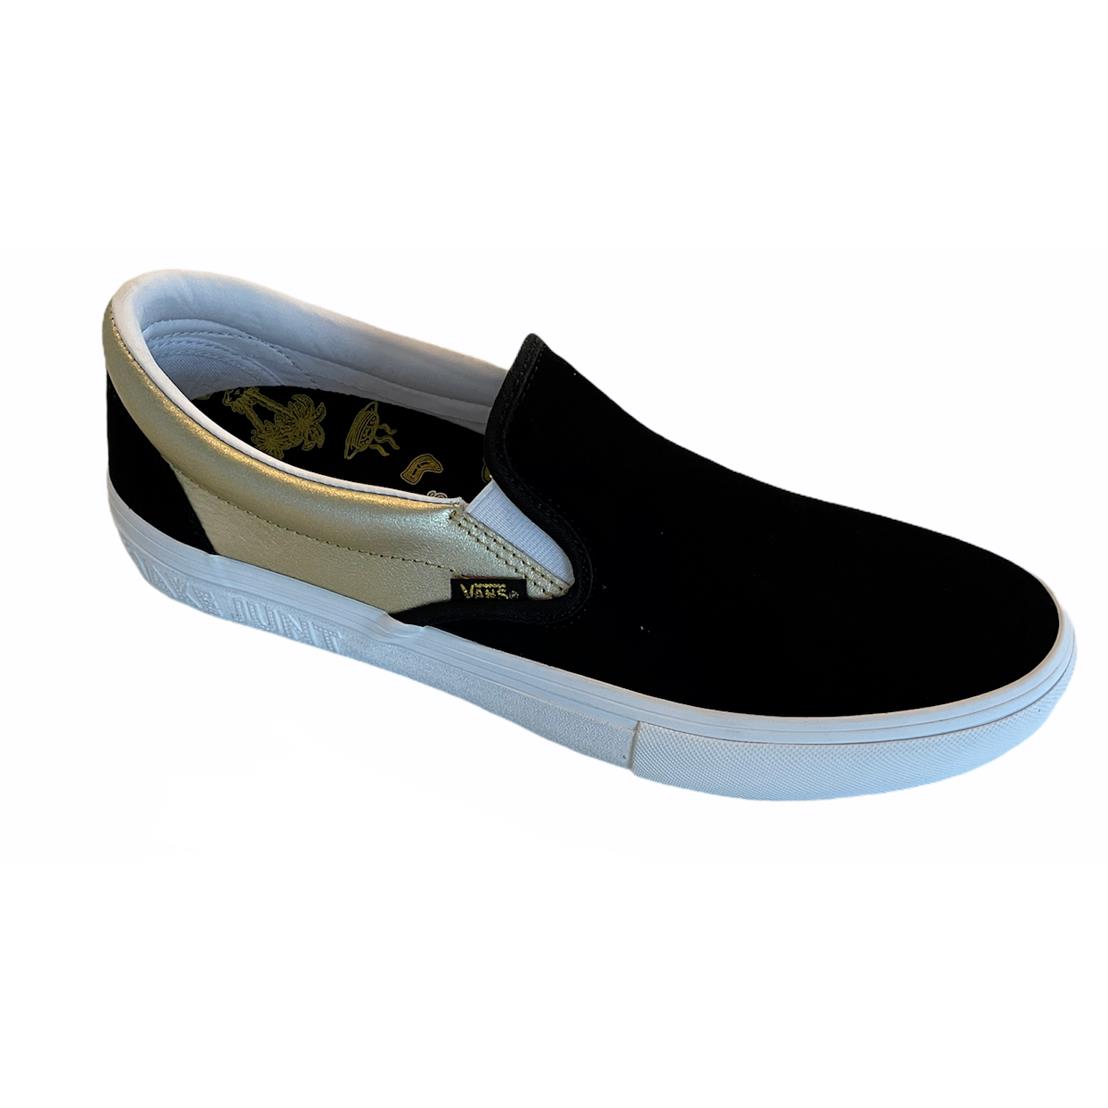 Vans Shake Junt Slip On Pro Black Gold Men`s Skate Shoes Size 10.5 Fast